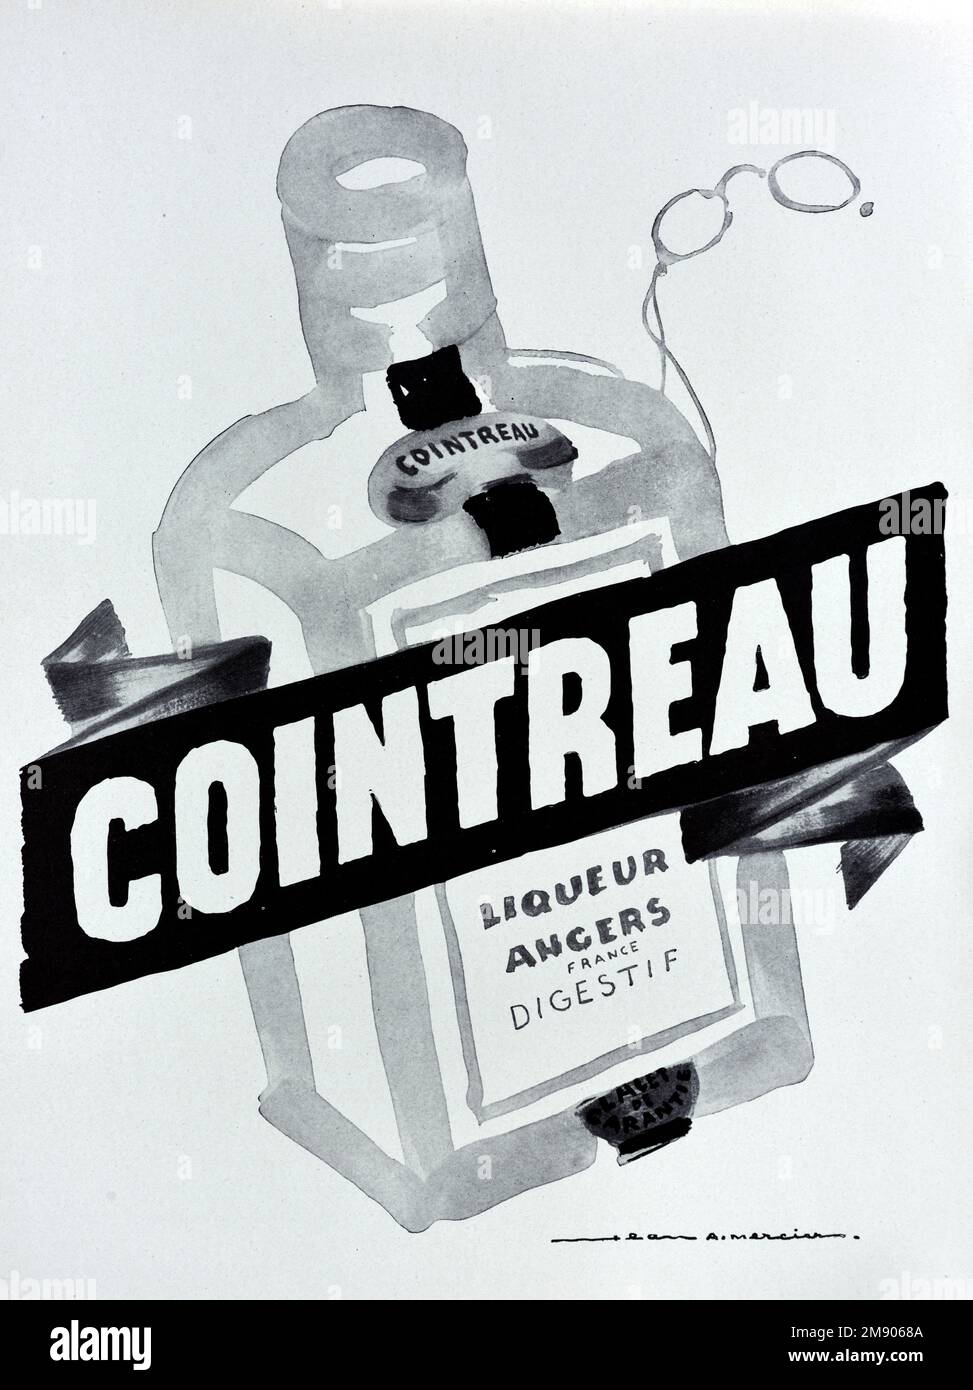 Anuncio de botella de Cointreau. Vintage o antiguo anuncio, publicidad, publicidad o ilustración 1957 Foto de stock